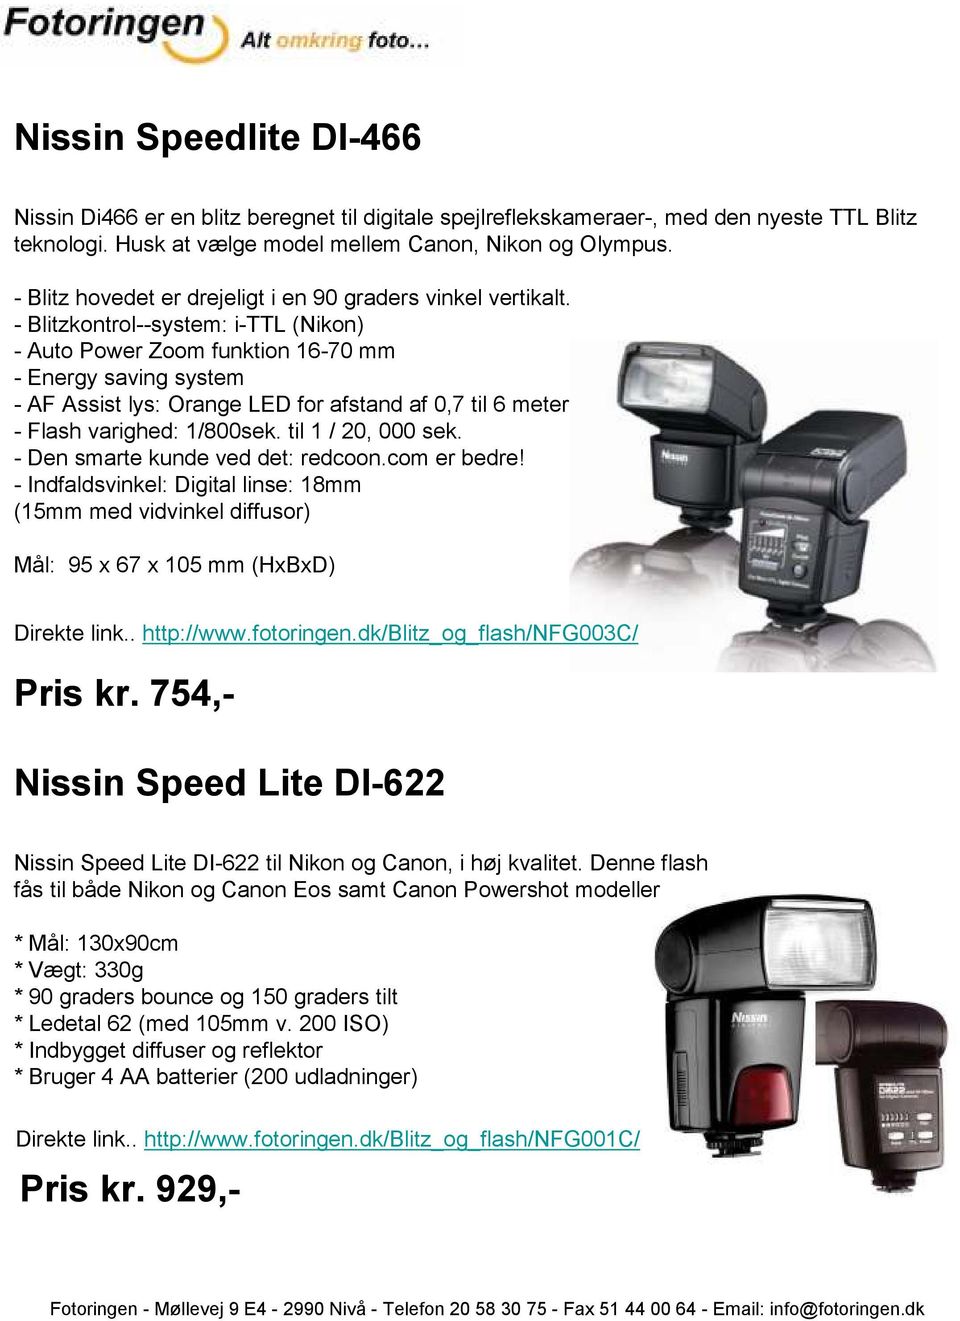 - Blitzkontrol--system: i-ttl (Nikon) - Auto Power Zoom funktion 16-70 mm - Energy saving system - AF Assist lys: Orange LED for afstand af 0,7 til 6 meter - Flash varighed: 1/800sek.